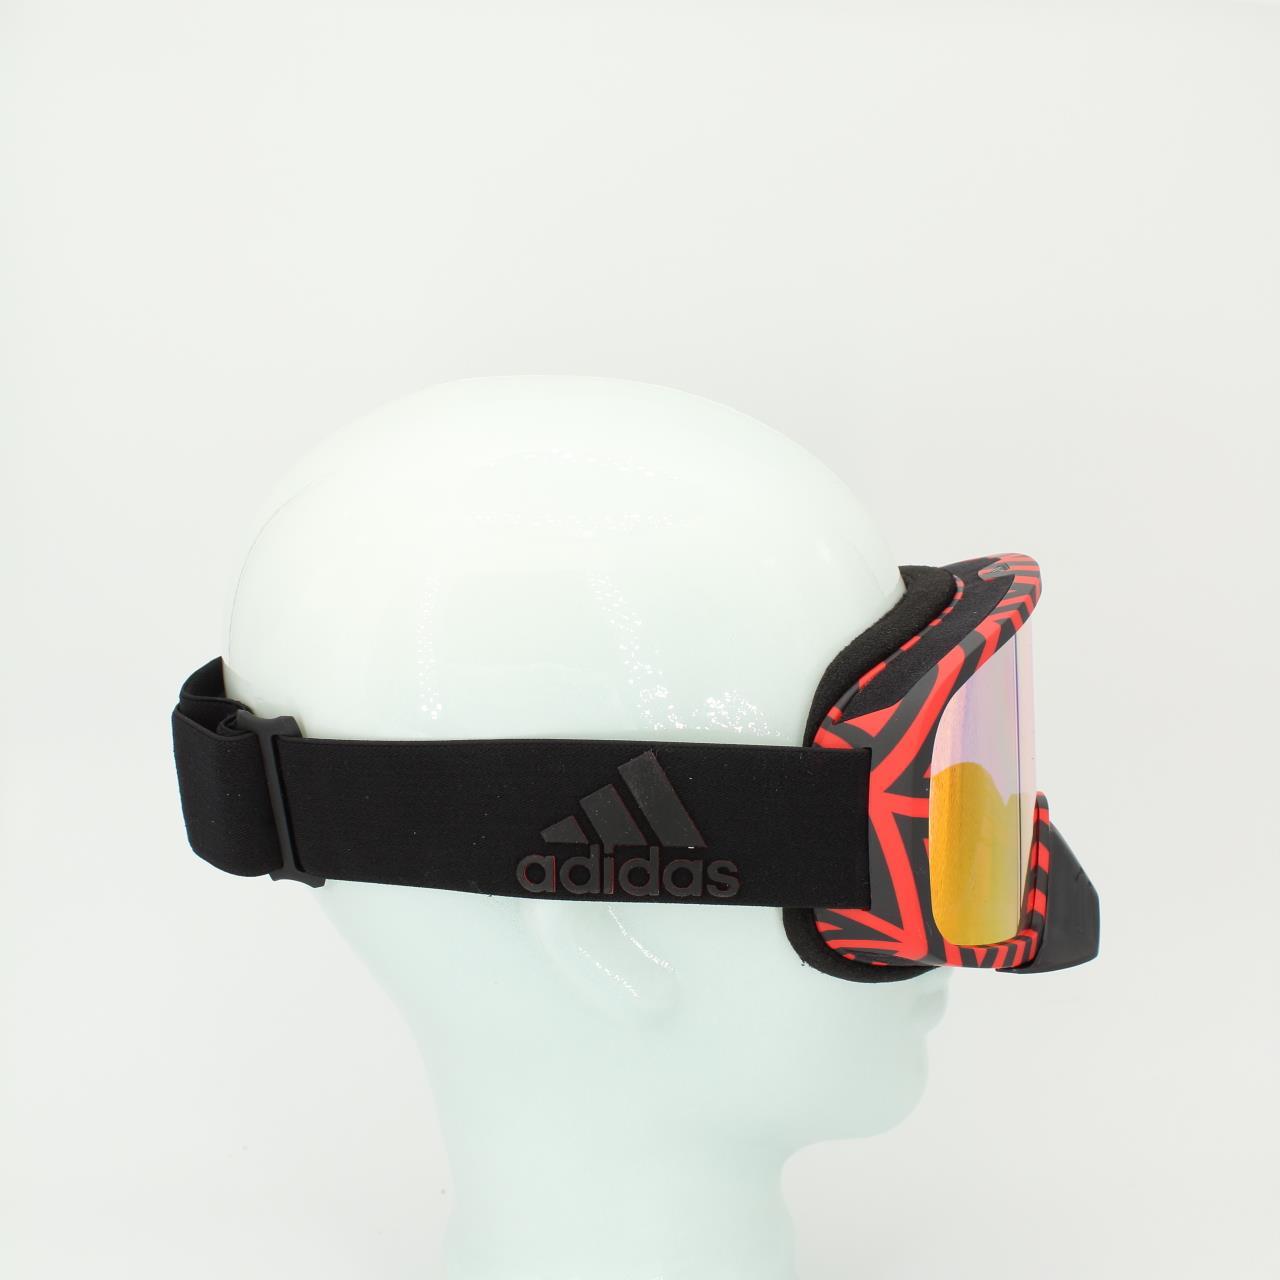 Adidas AD84 75 3000 backland dirt Skibrille Snowboardbrille Schneebrille CK7114